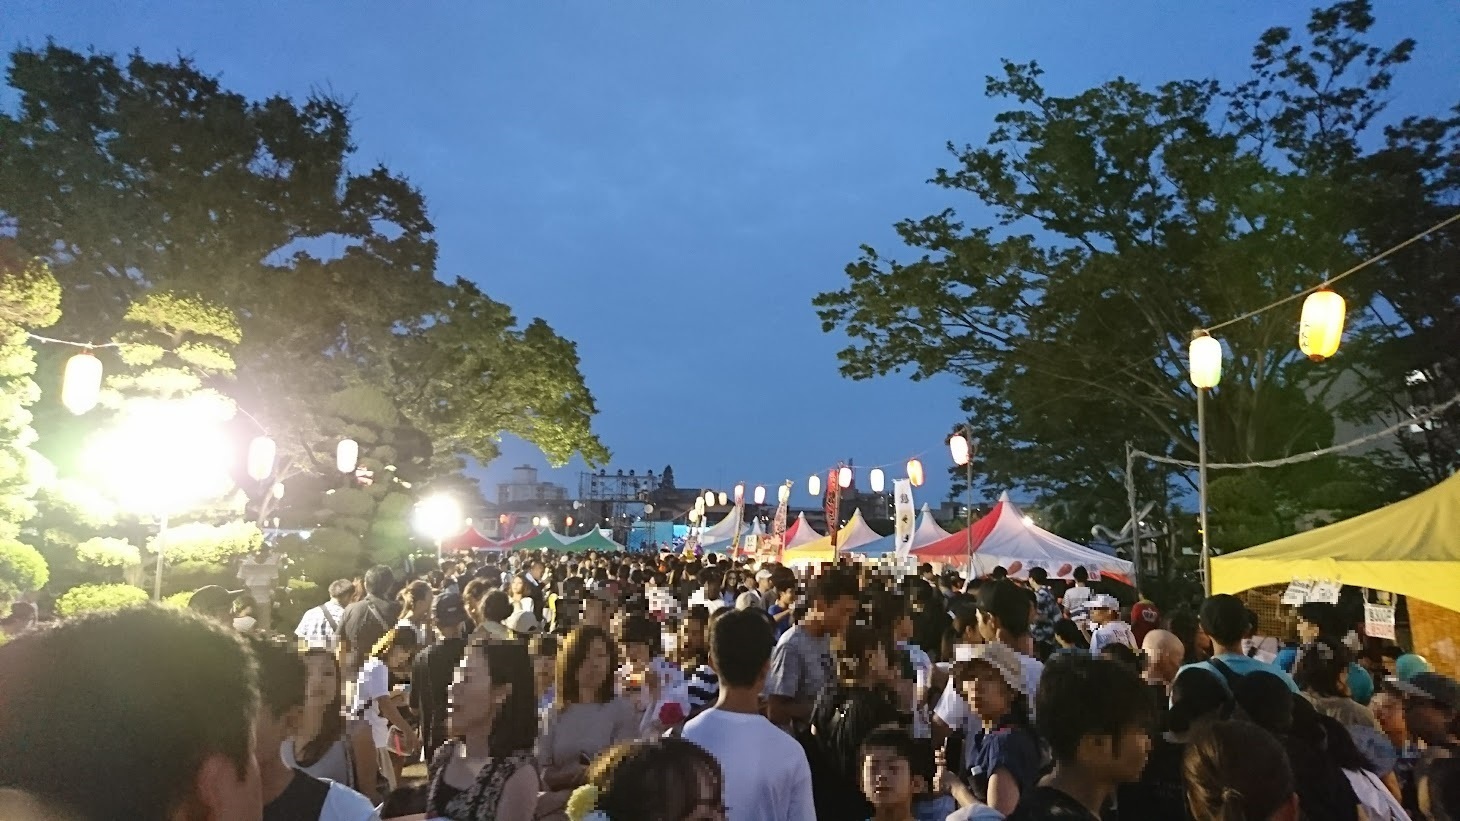 2019年に開催した「戸田ふるさと祭り」の様子